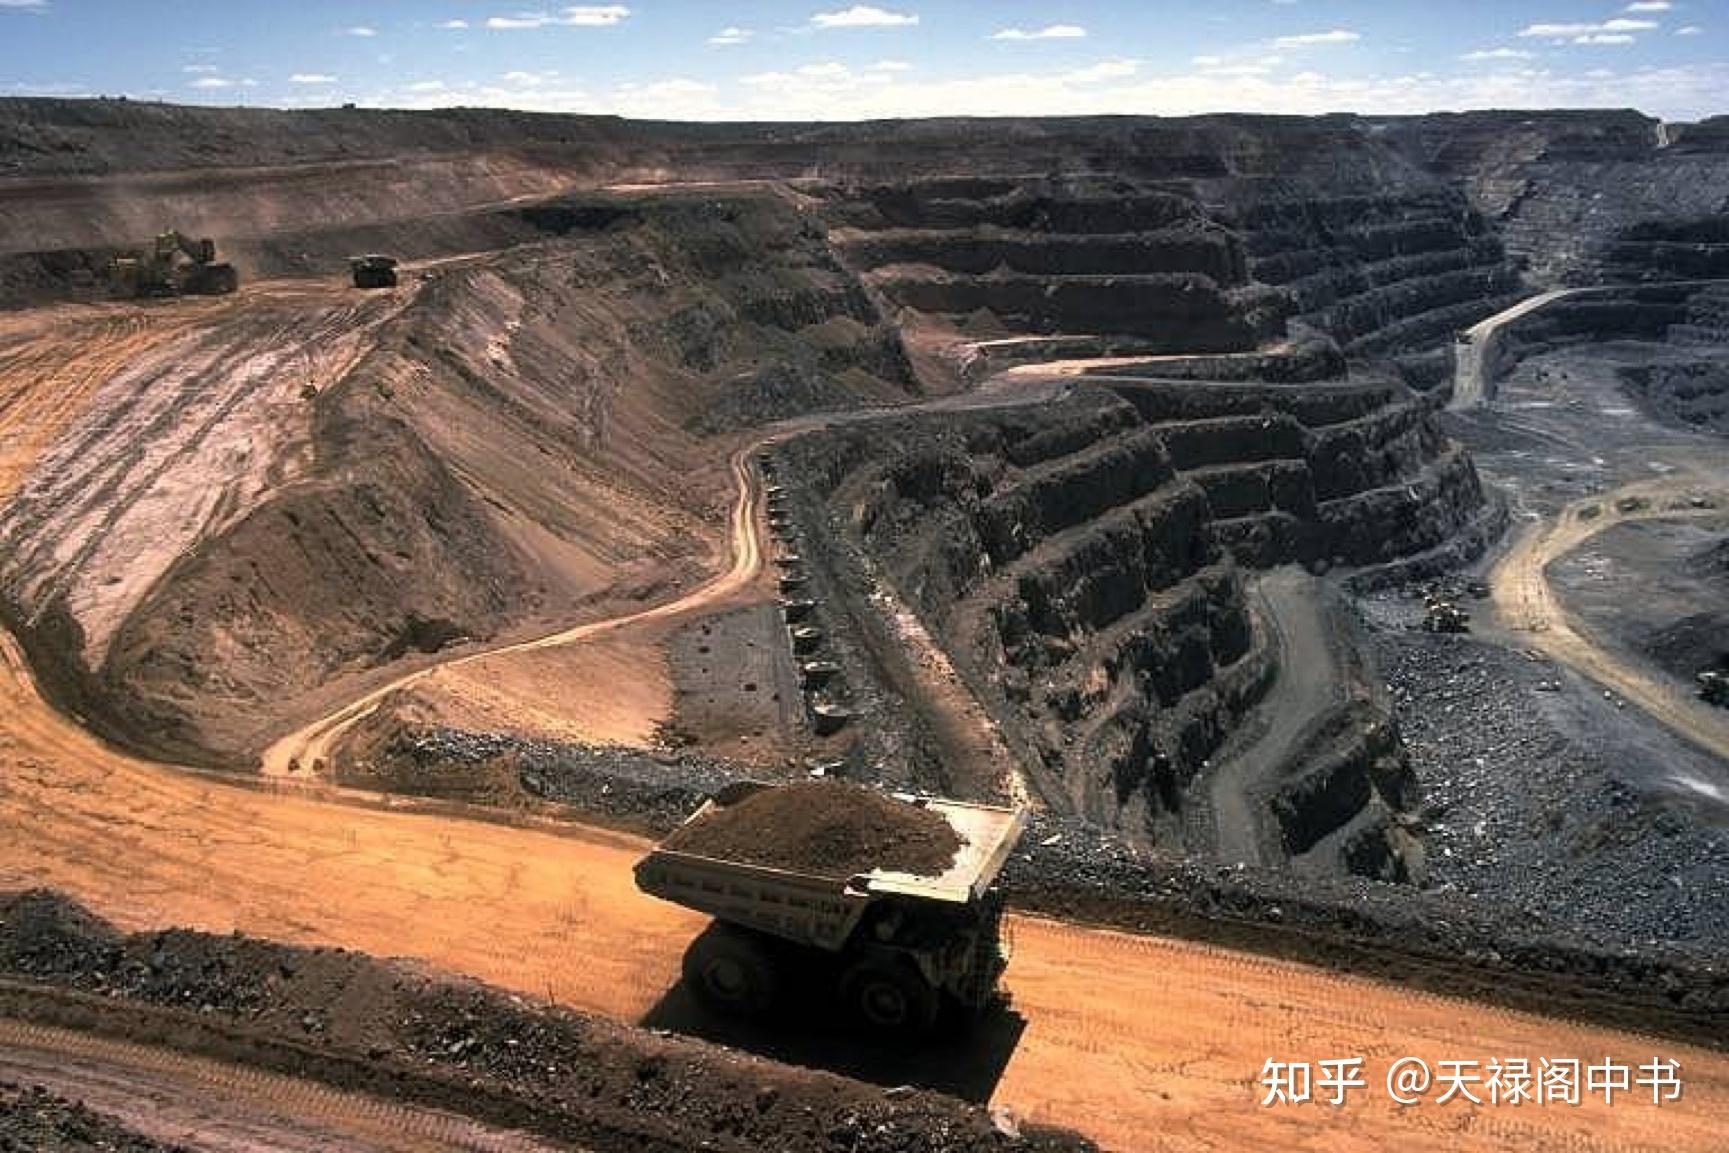 内蒙古煤矿坍塌事故:号称安全的露天煤矿为何会发生事故? 